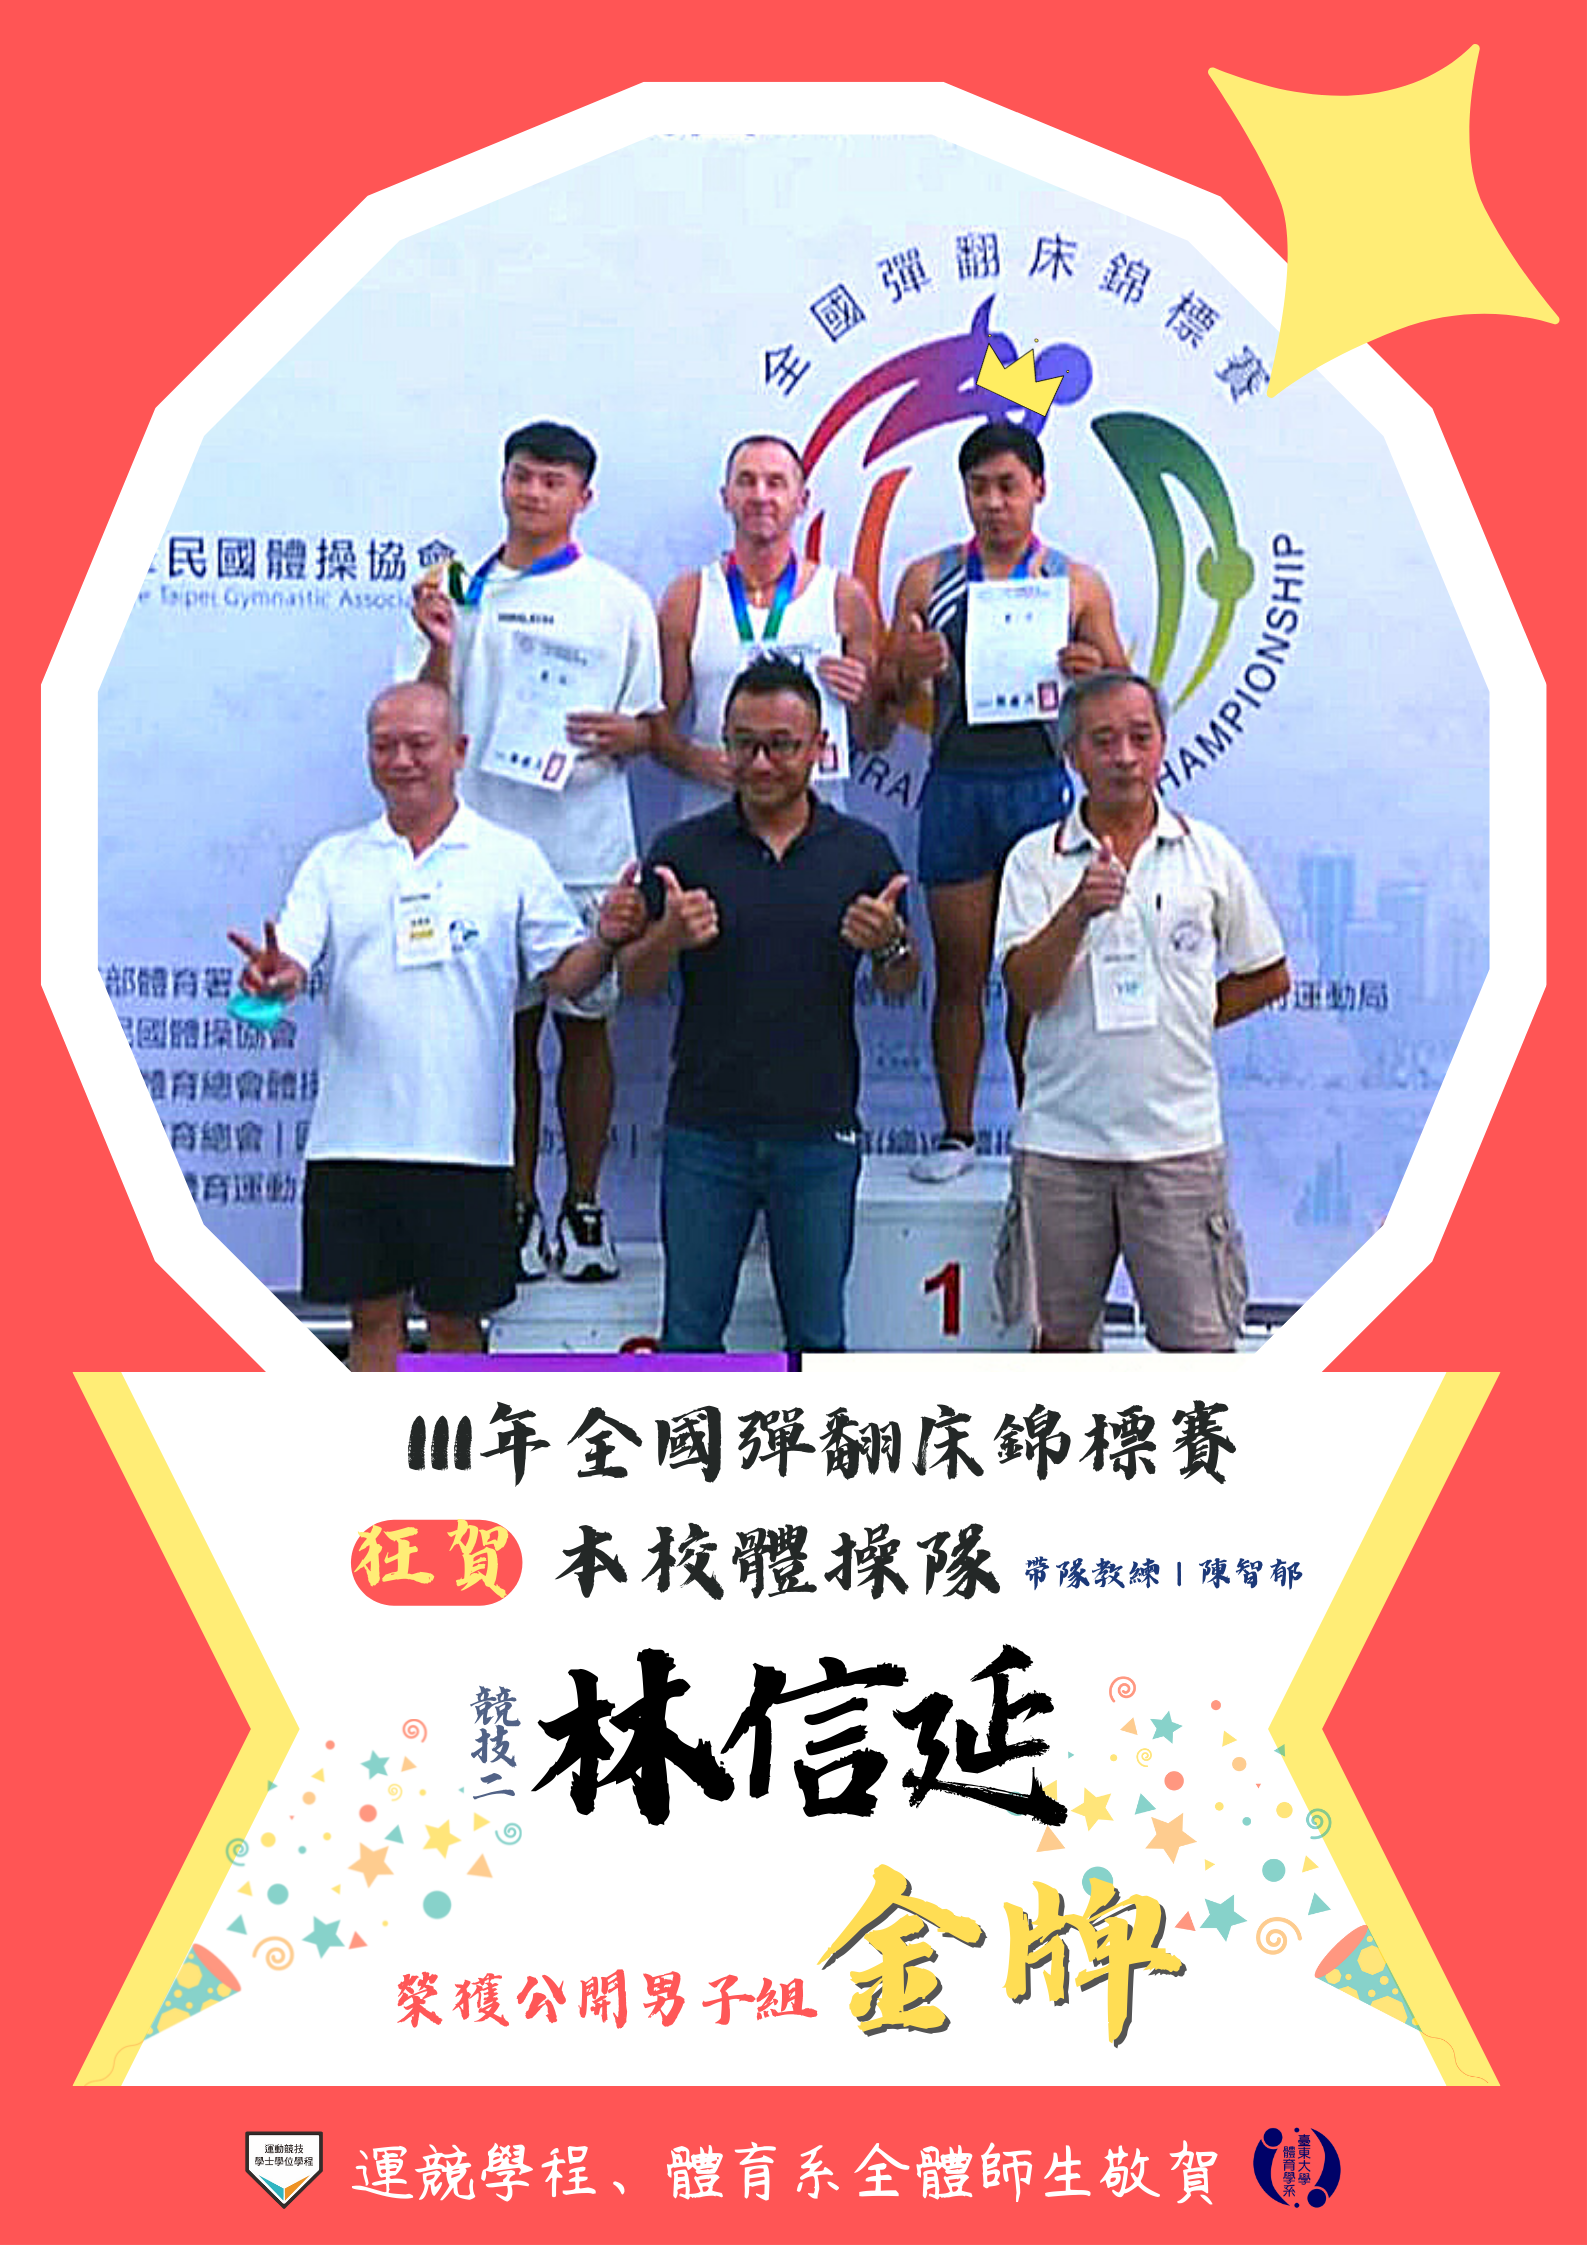 20221115本校體操隊競技二林信延參加111年全國彈翻床錦標賽榮獲公開男子組金牌